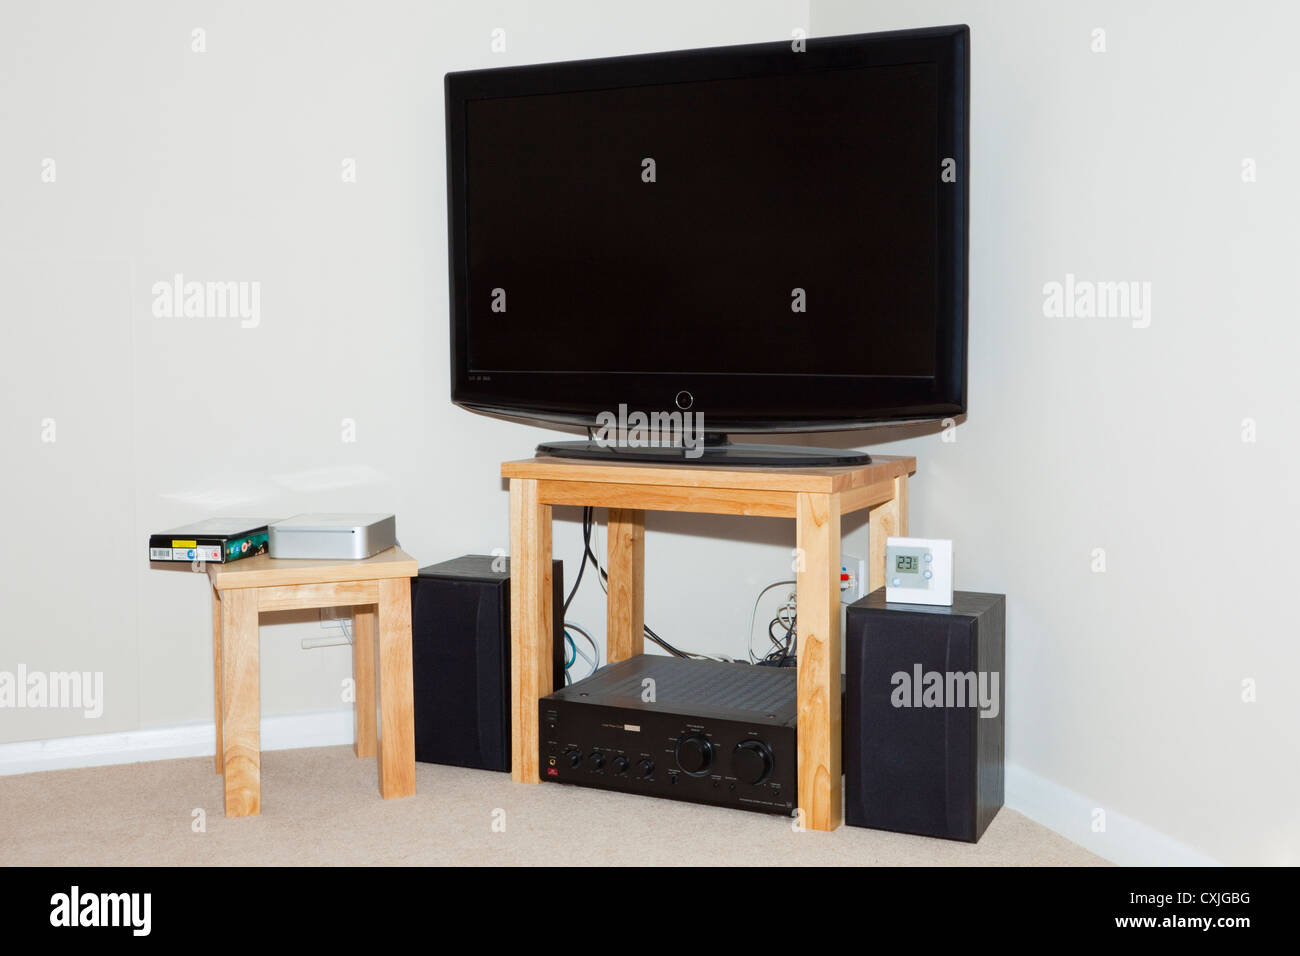 UK, Großbritannien. Flachbildschirm-Fernseher und Lautsprecher in der Ecke eines Wohnzimmers Stockfoto